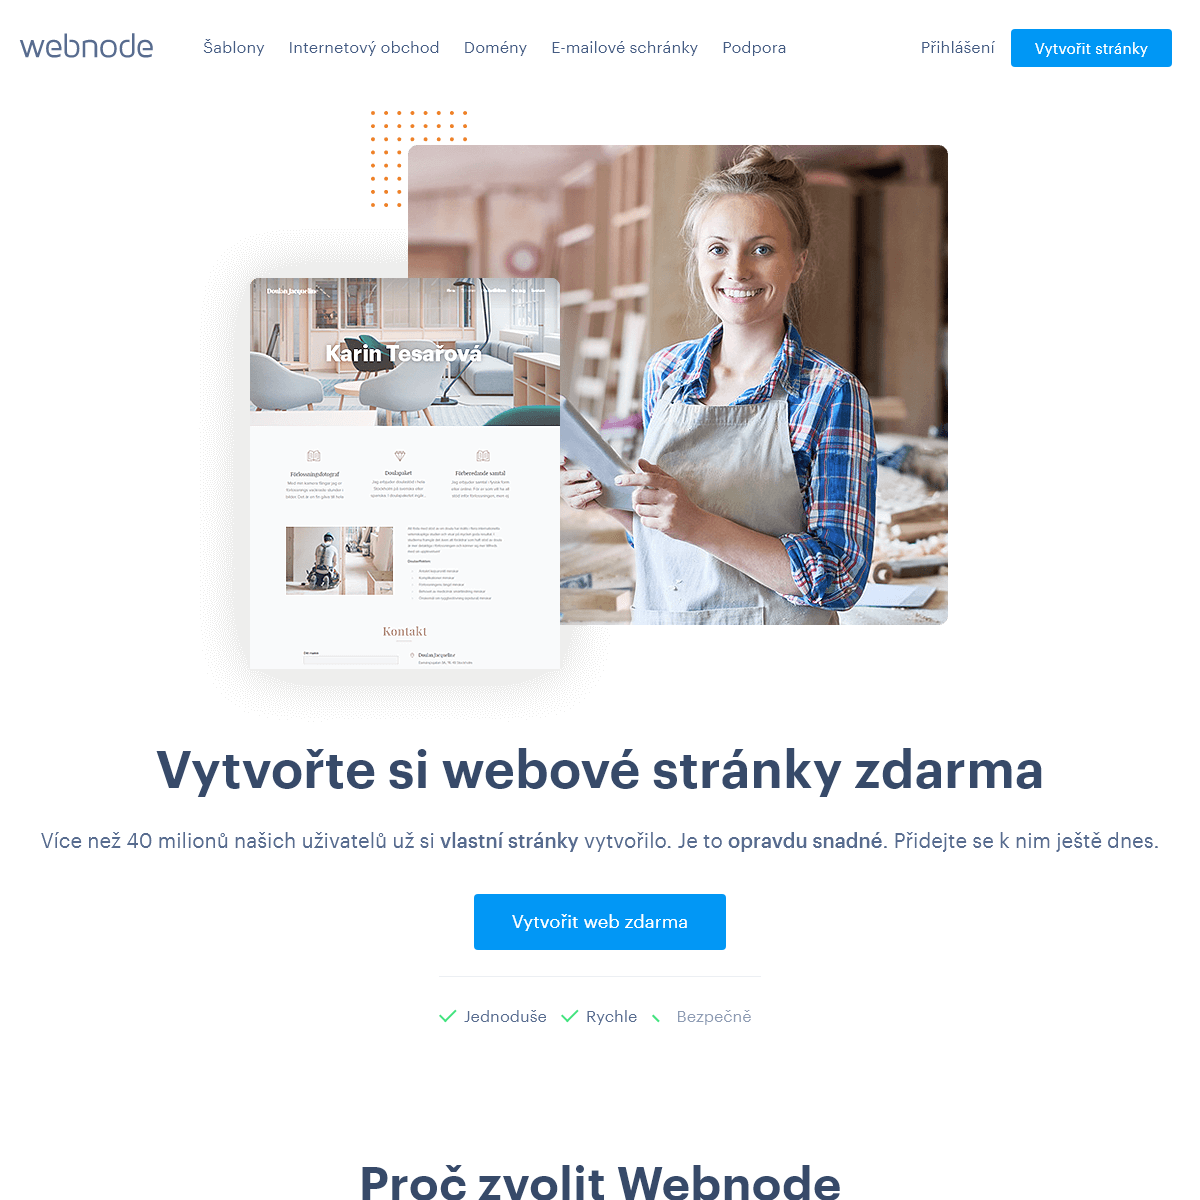 A complete backup of webnode.cz